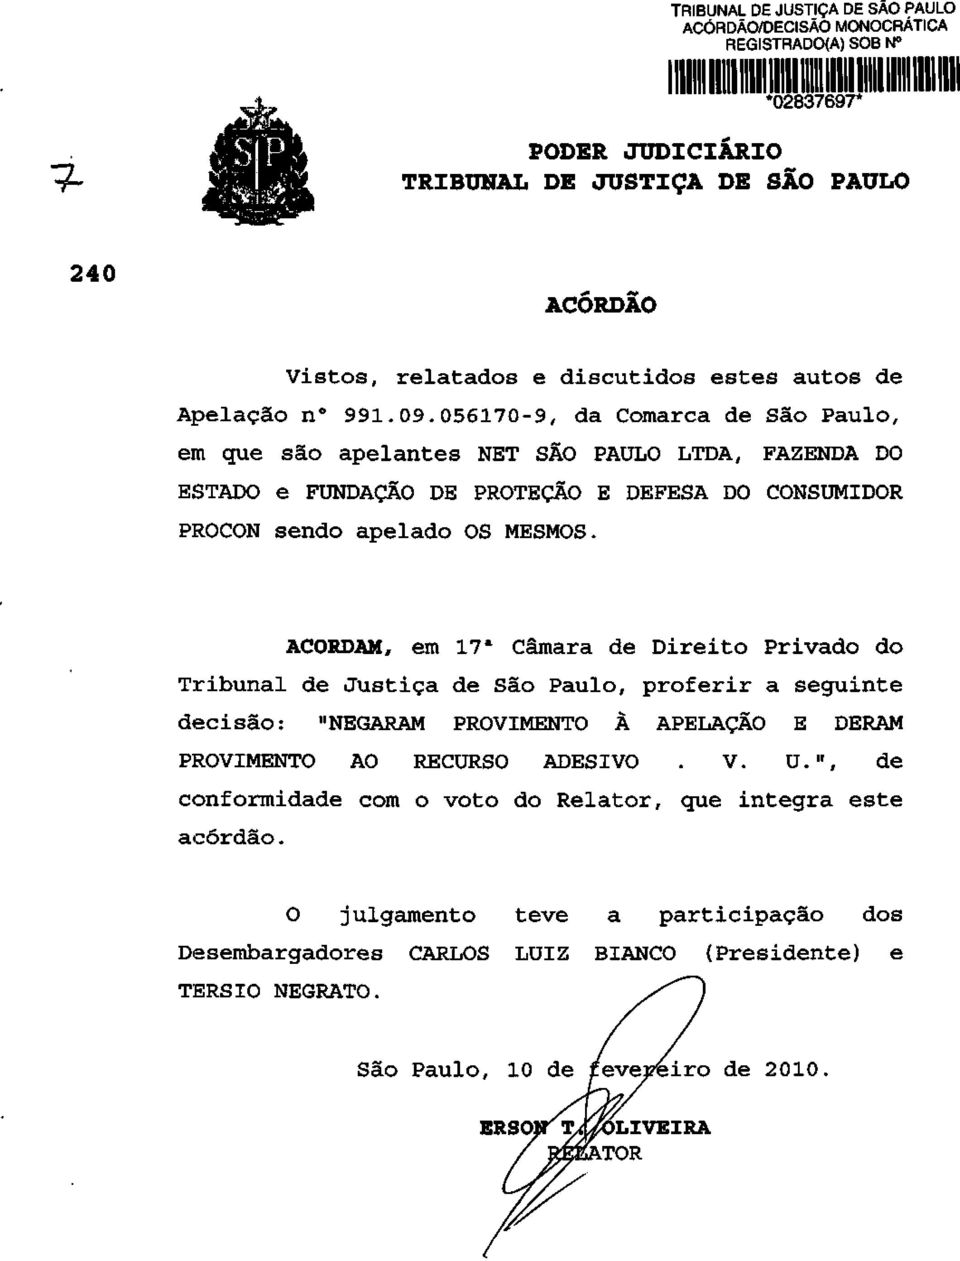 ACORDAM, em 17 a Câmara de Direito Privado do Tribunal de Justiça de São Paulo, proferir a seguinte decisão: "NEGARAM PROVIMENTO À APELAÇÃO E DERAM PROVIMENTO AO RECURSO ADESIVO. V. U.